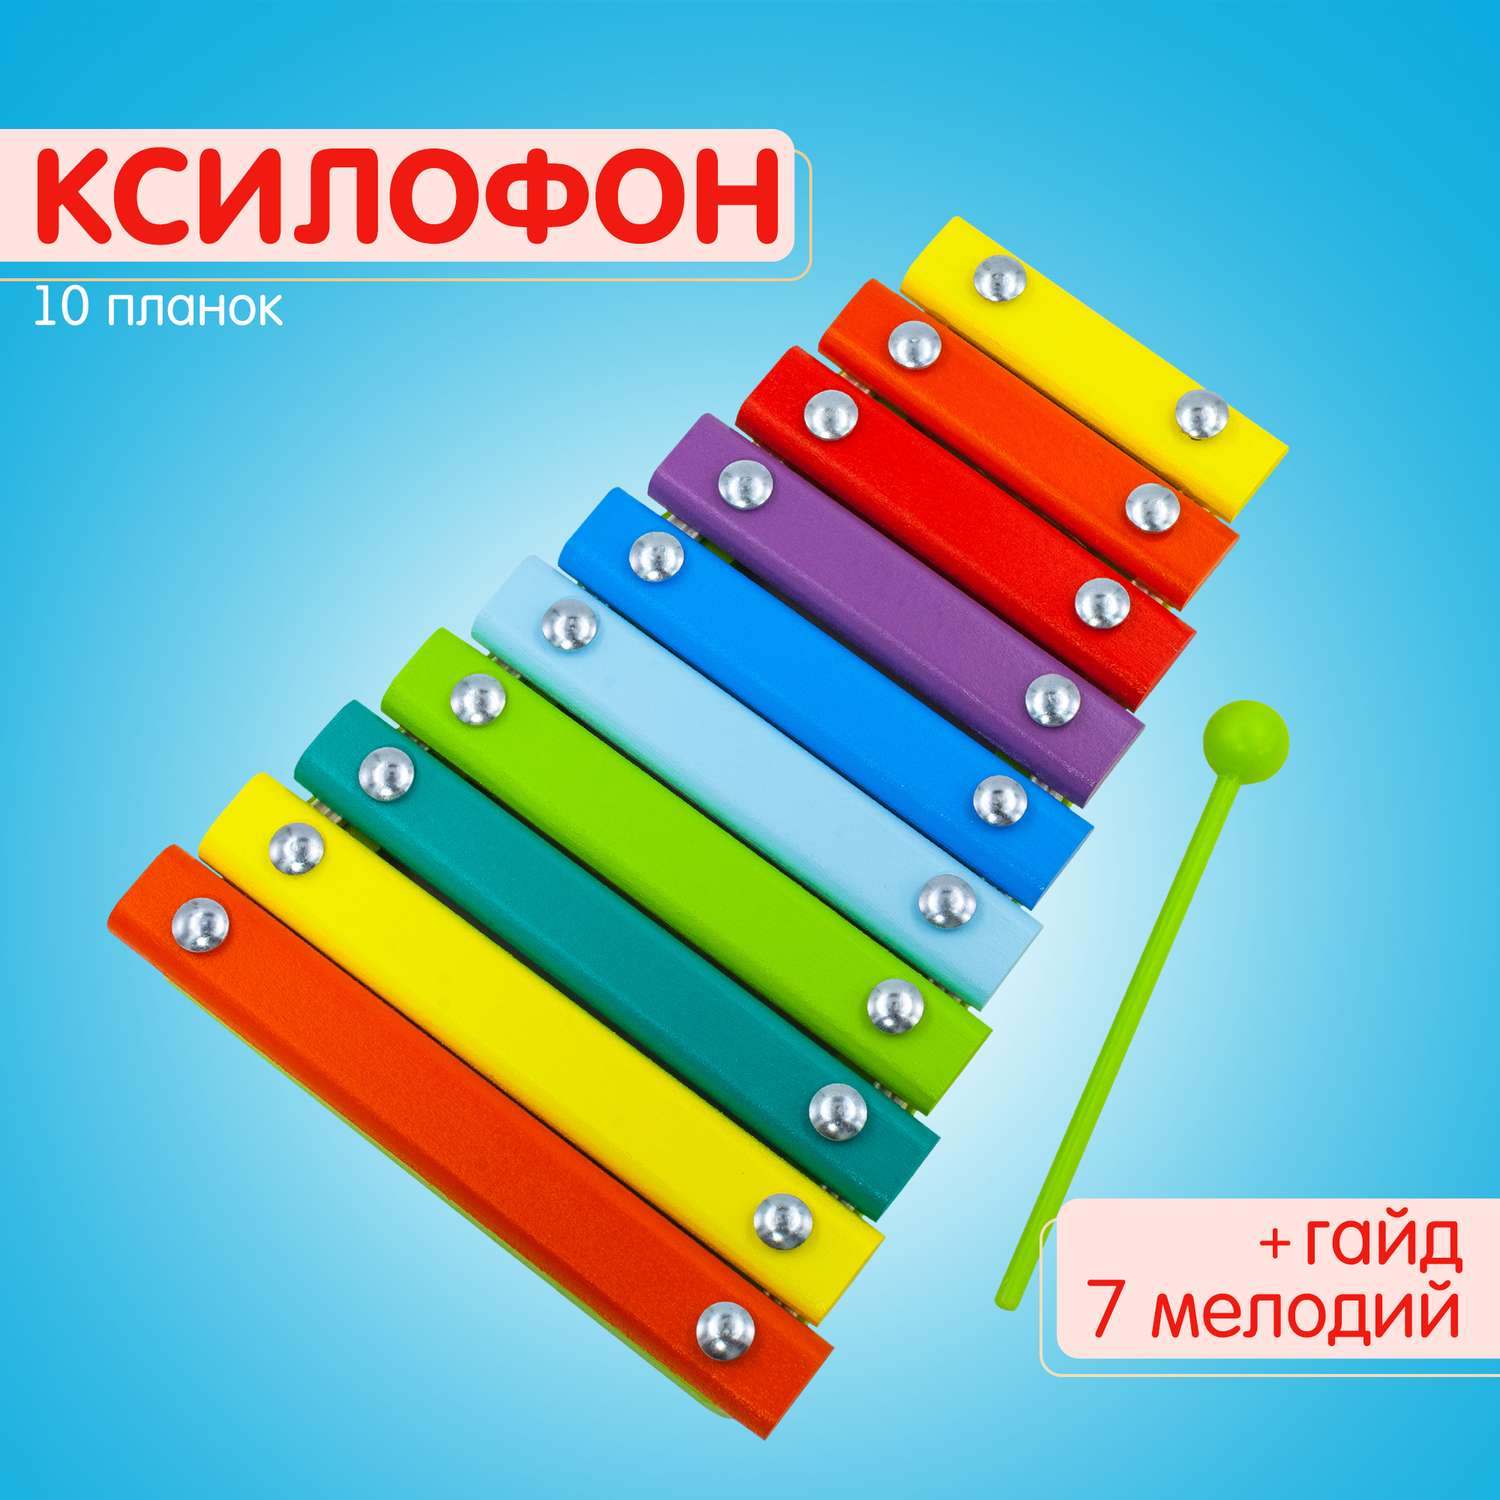 Ксилофон цветные ступеньки Alatoys 10 планок + гайд с играми - фото 1